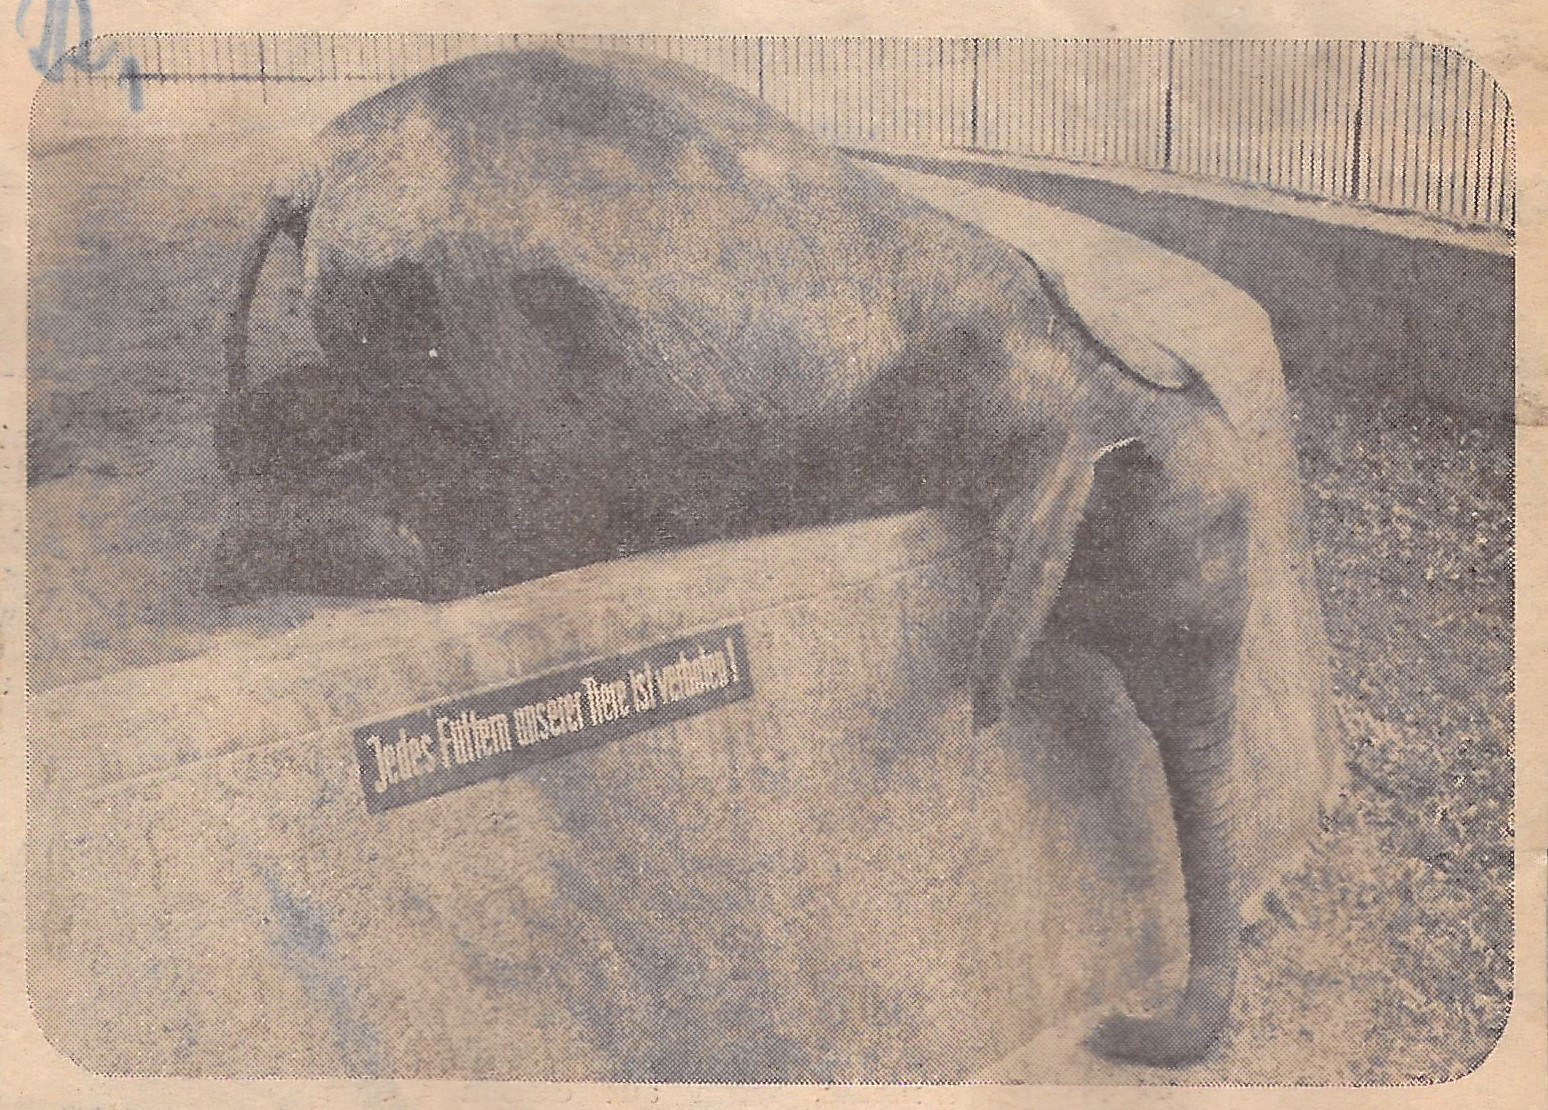 Schwarz-weiß Foto: Elefant, der seinen Rüssel in den Graben zwischen Gehege und Absperrung hängen lässt. Schild am Elefantengehege: Jedes Füttern unserer Tiere ist verboten!